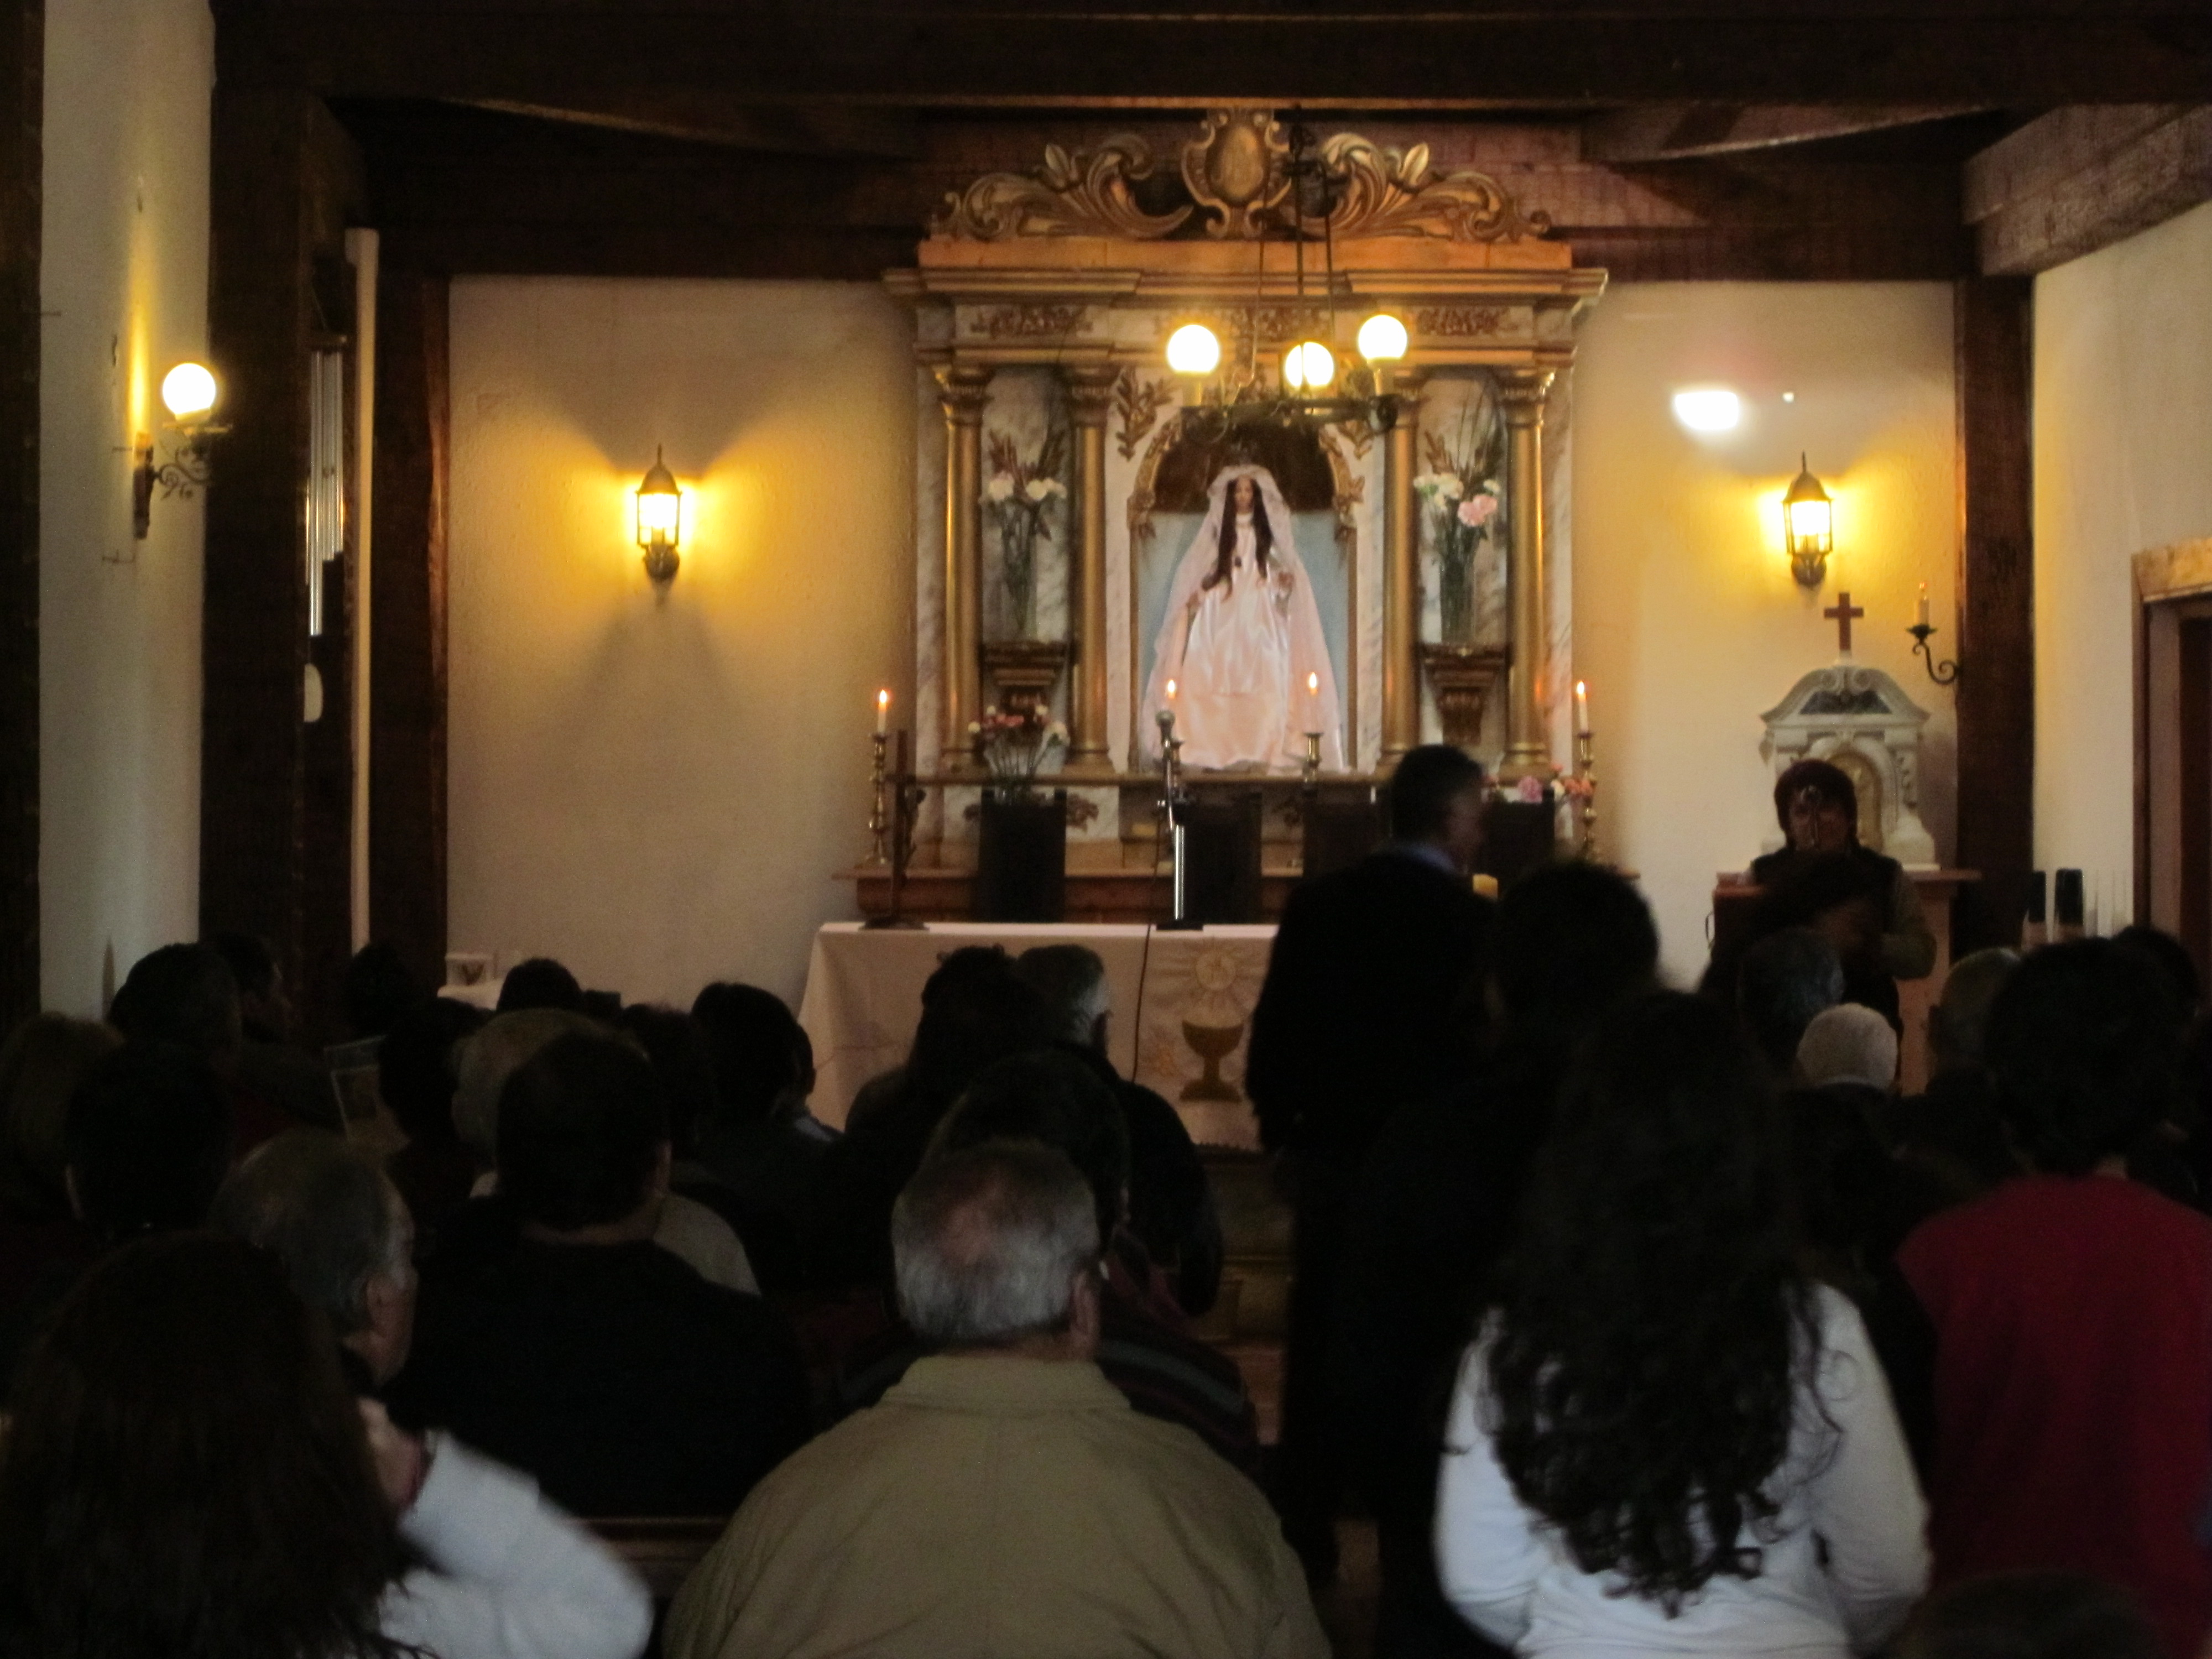 Foto: Interior de la iglesia durante la misa - El Totoral (Valparaíso), Chile